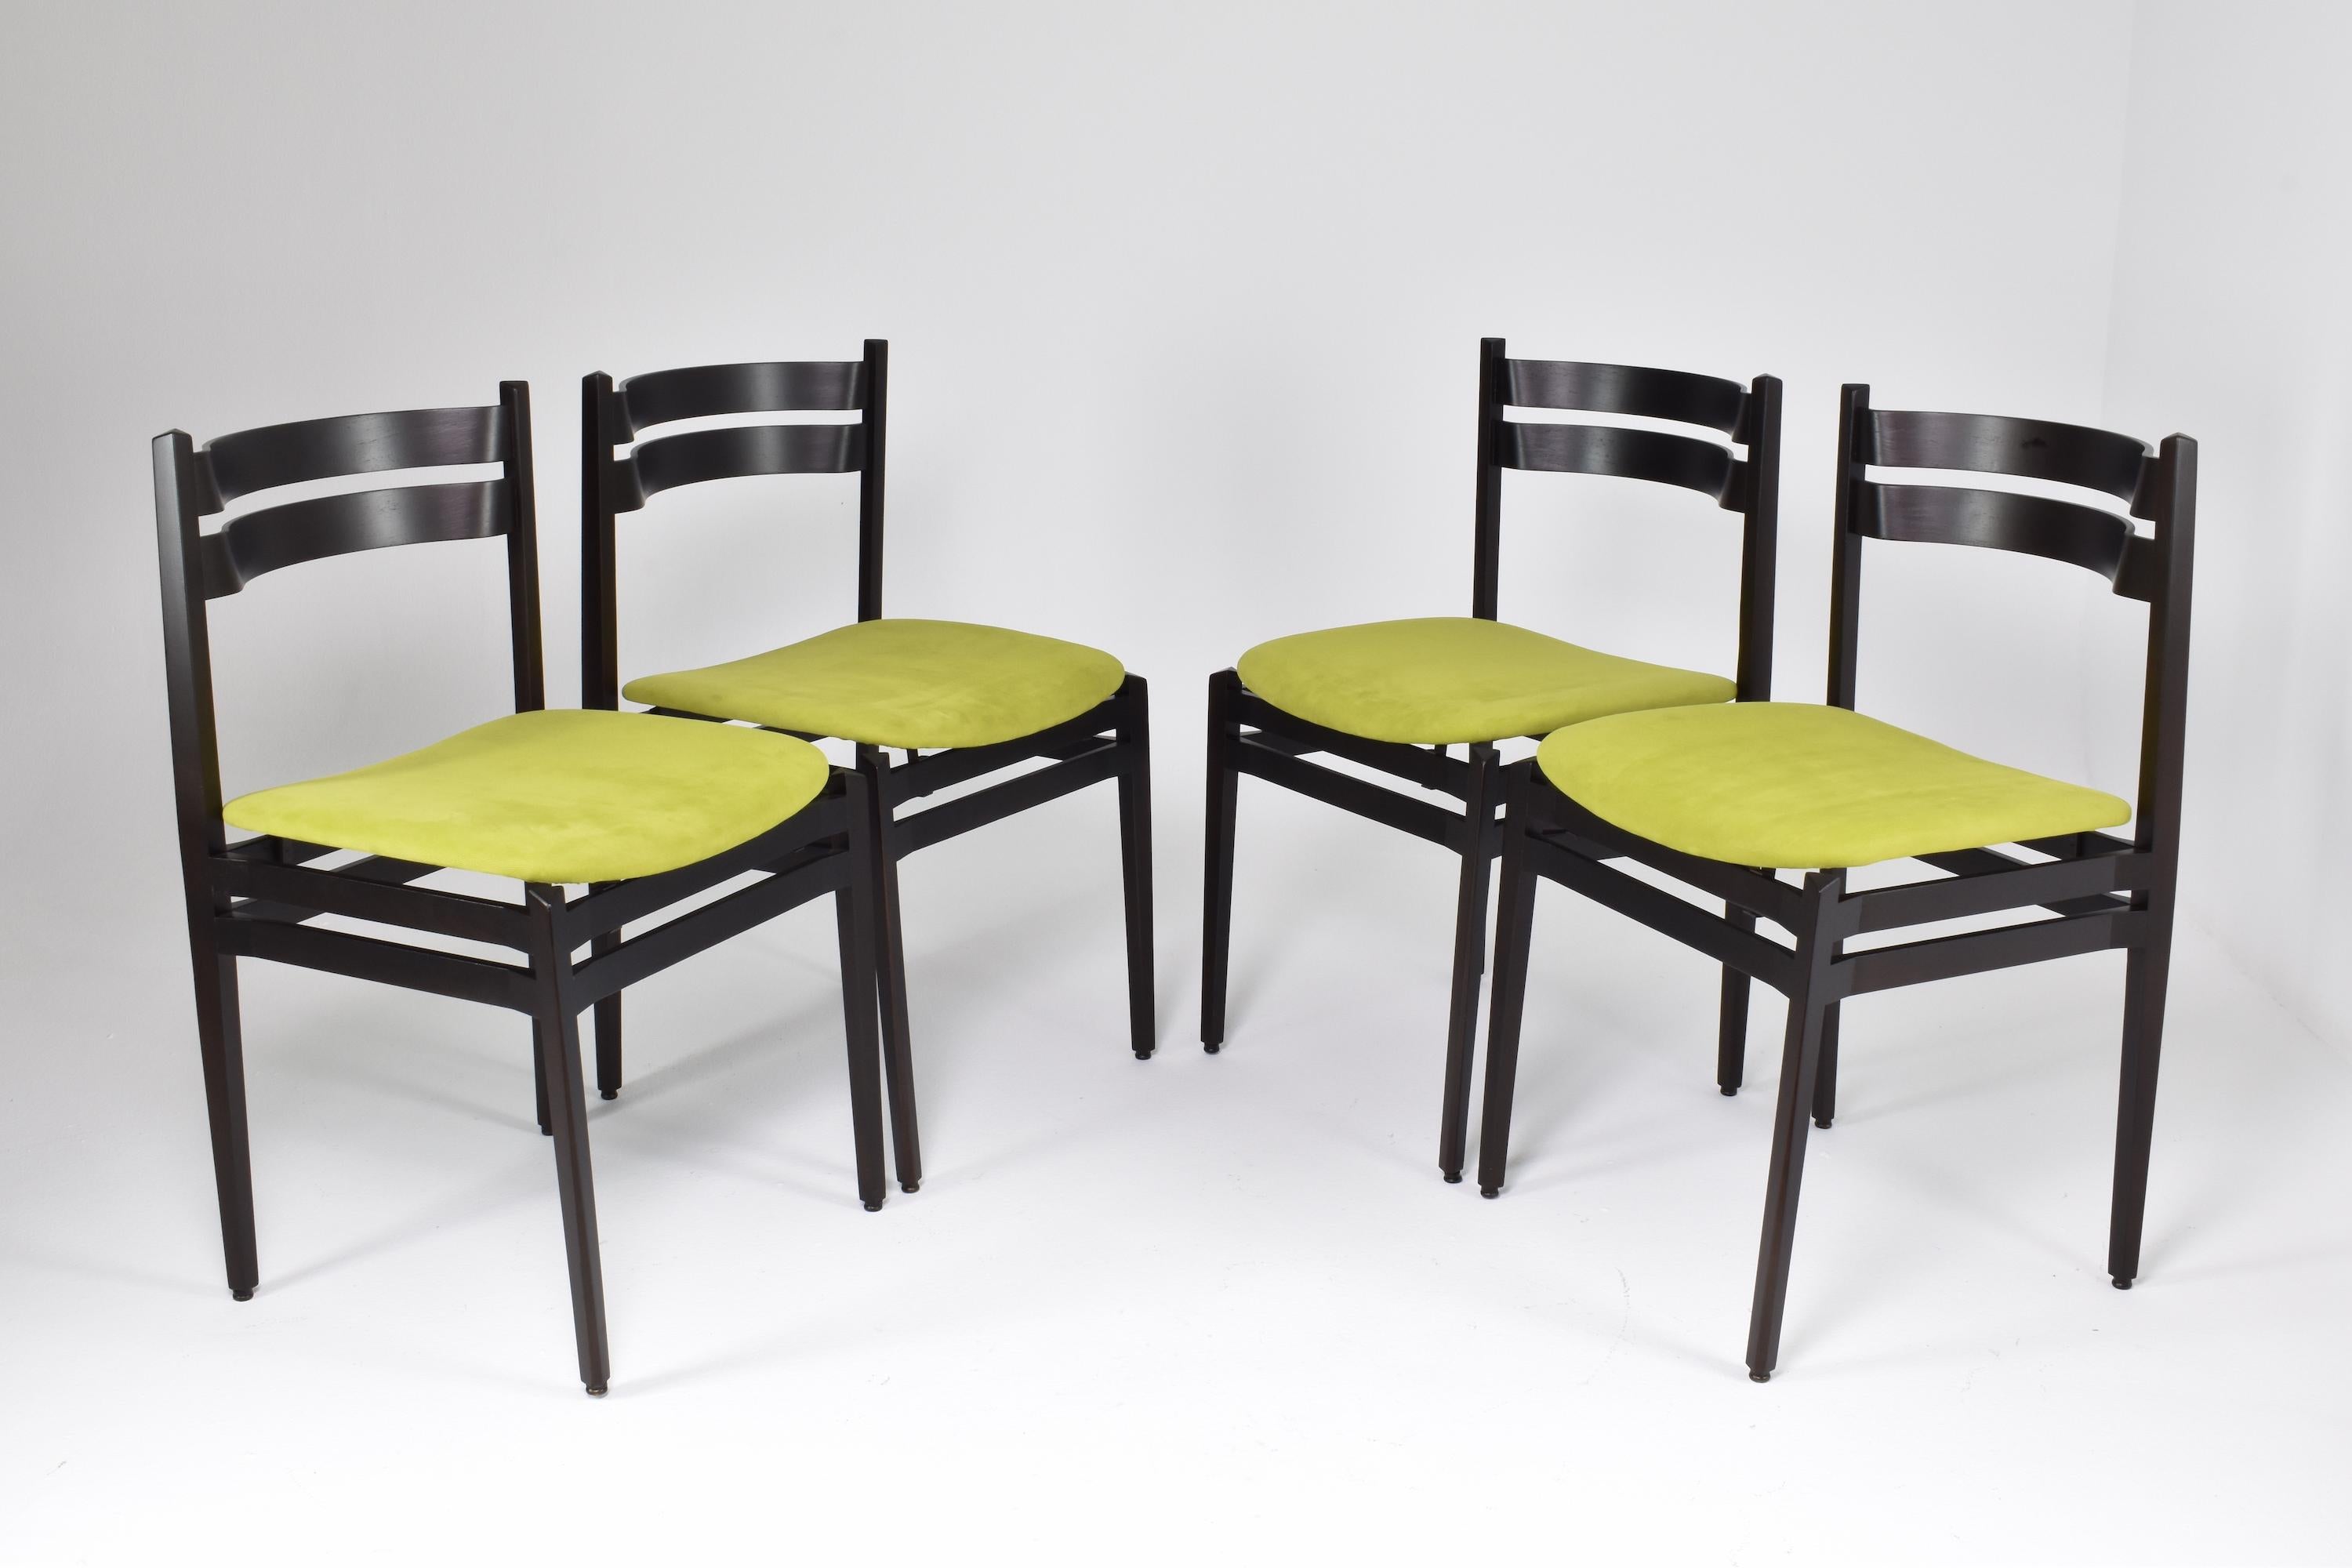 Die Stühle des Modells 107, die Gianfranco Frattini in den 1960er Jahren für Cassina entwarf, sind für ihr elegantes und understated.design bekannt. Diese Sammelstühle zeichnen sich durch ihre klaren Linien und die Verwendung von hochwertigem Holz